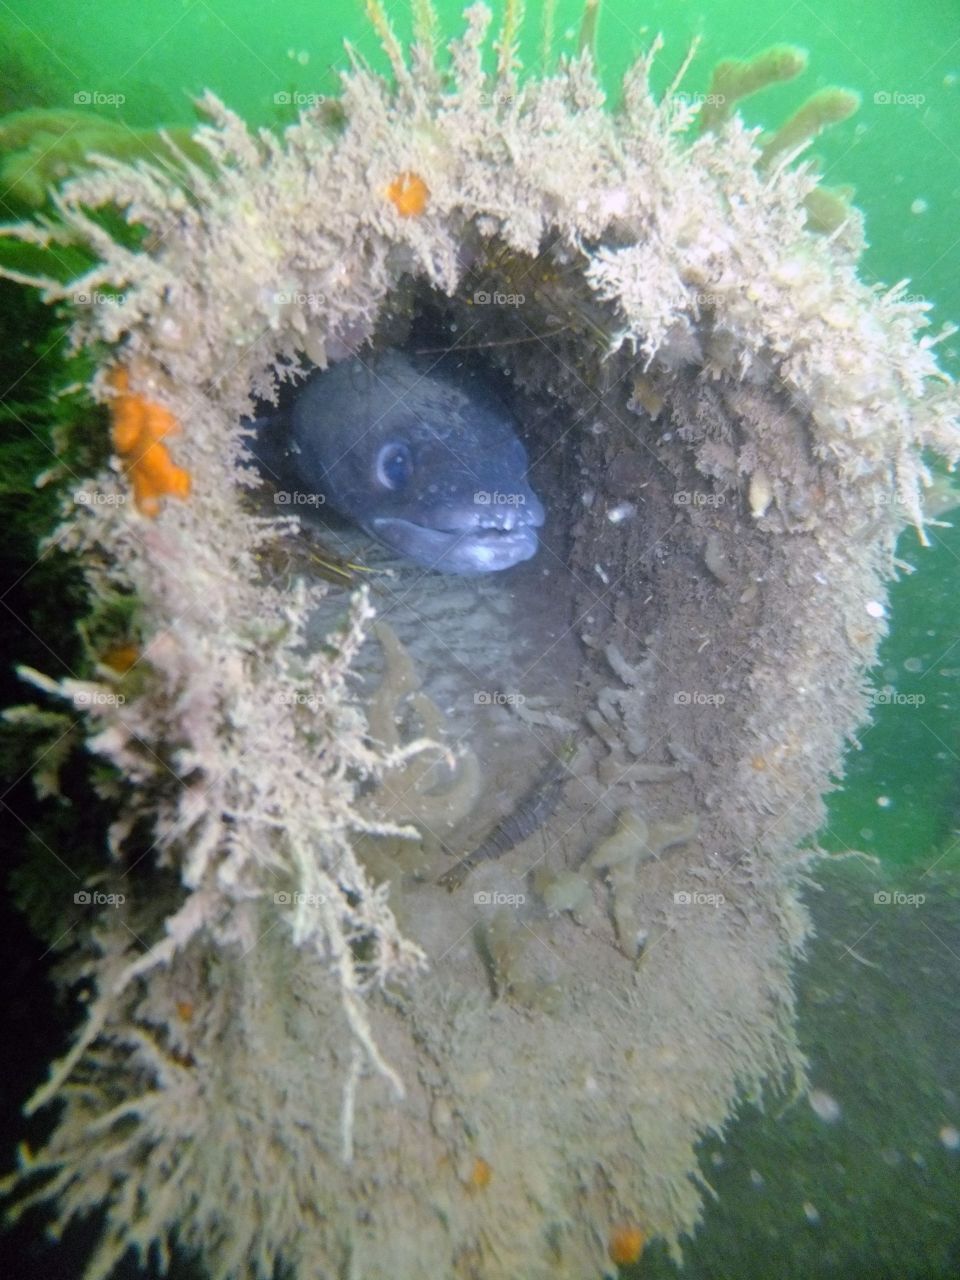 Conger eel living in shipwreck